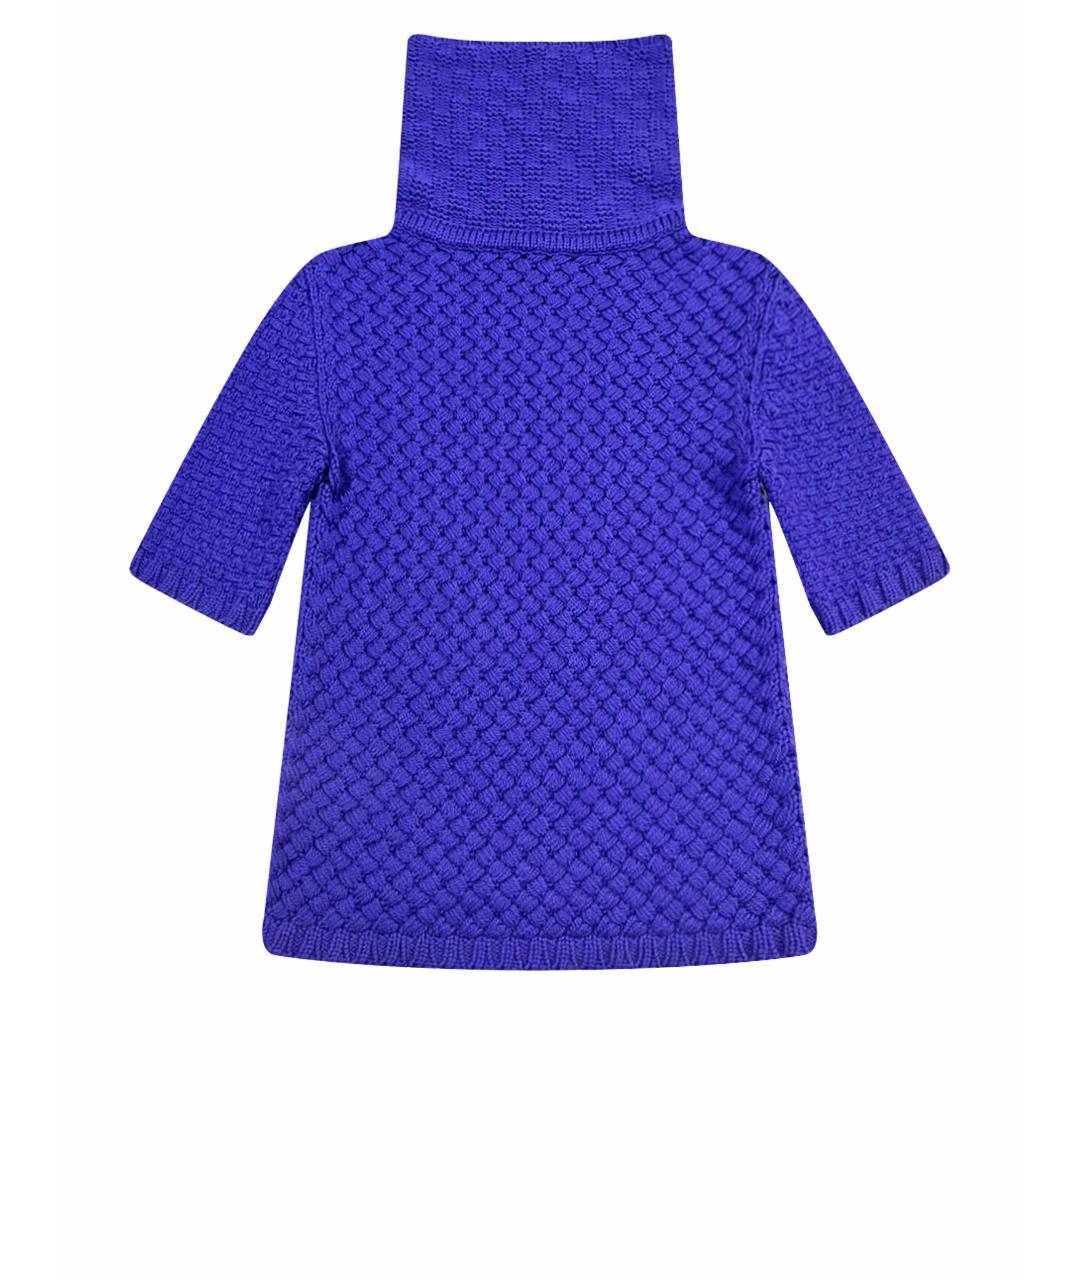 EMILIO PUCCI Фиолетовый шерстяной джемпер / свитер, фото 1